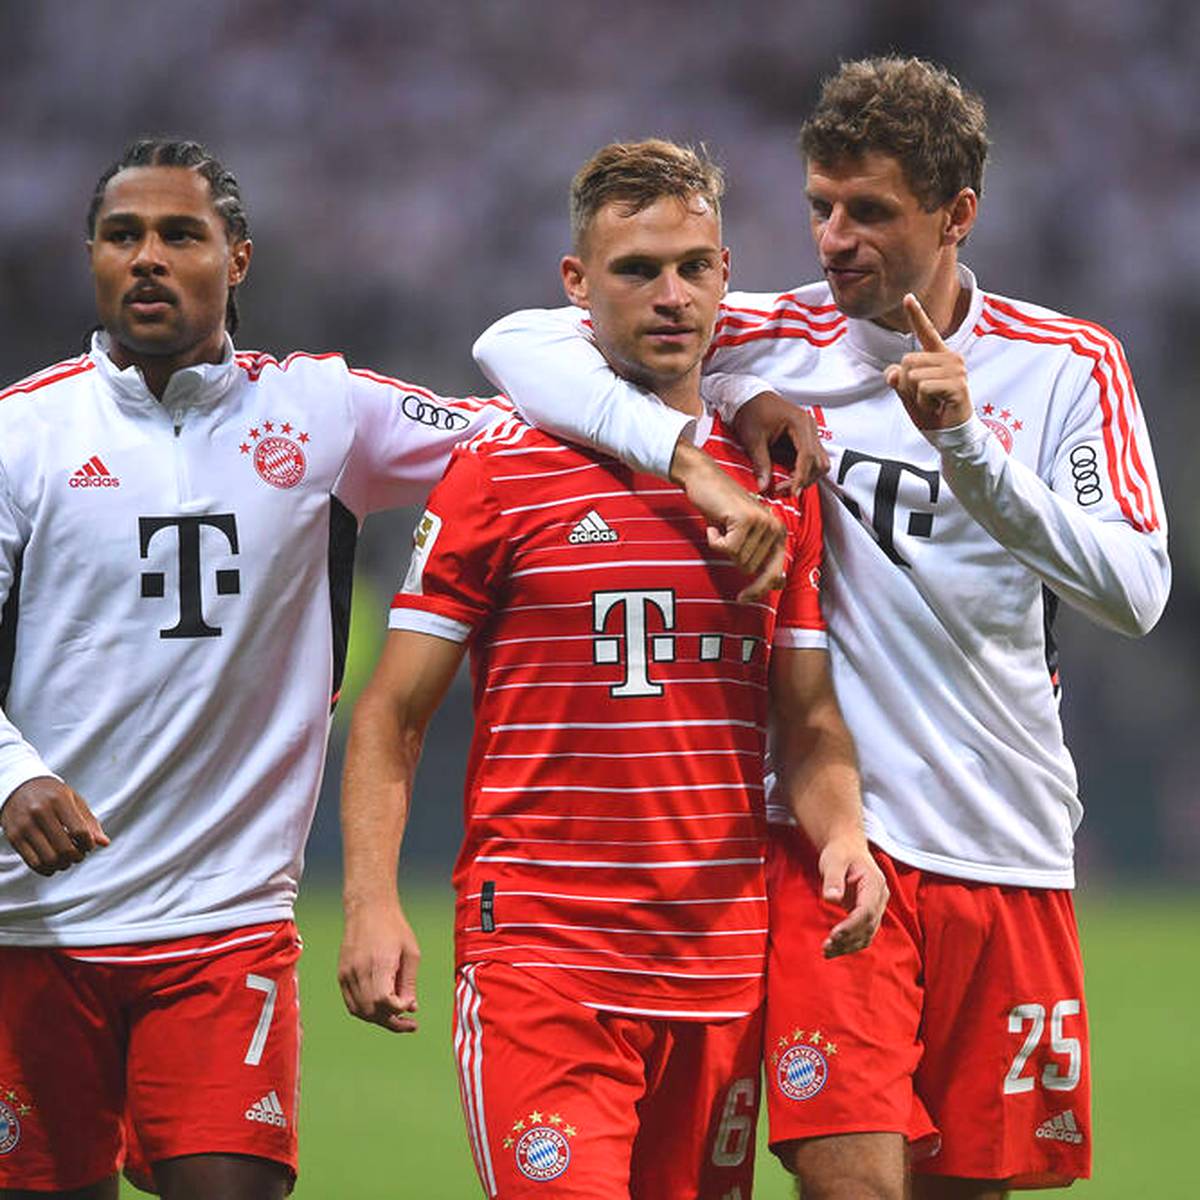 Der FC Bayern hat erneut Probleme mit Coronafällen. Die Infektionen kommen zur Unzeit, denn es stehen entscheidende Wochen für die Mannschaft von Trainer Julian Nagelsmann an.